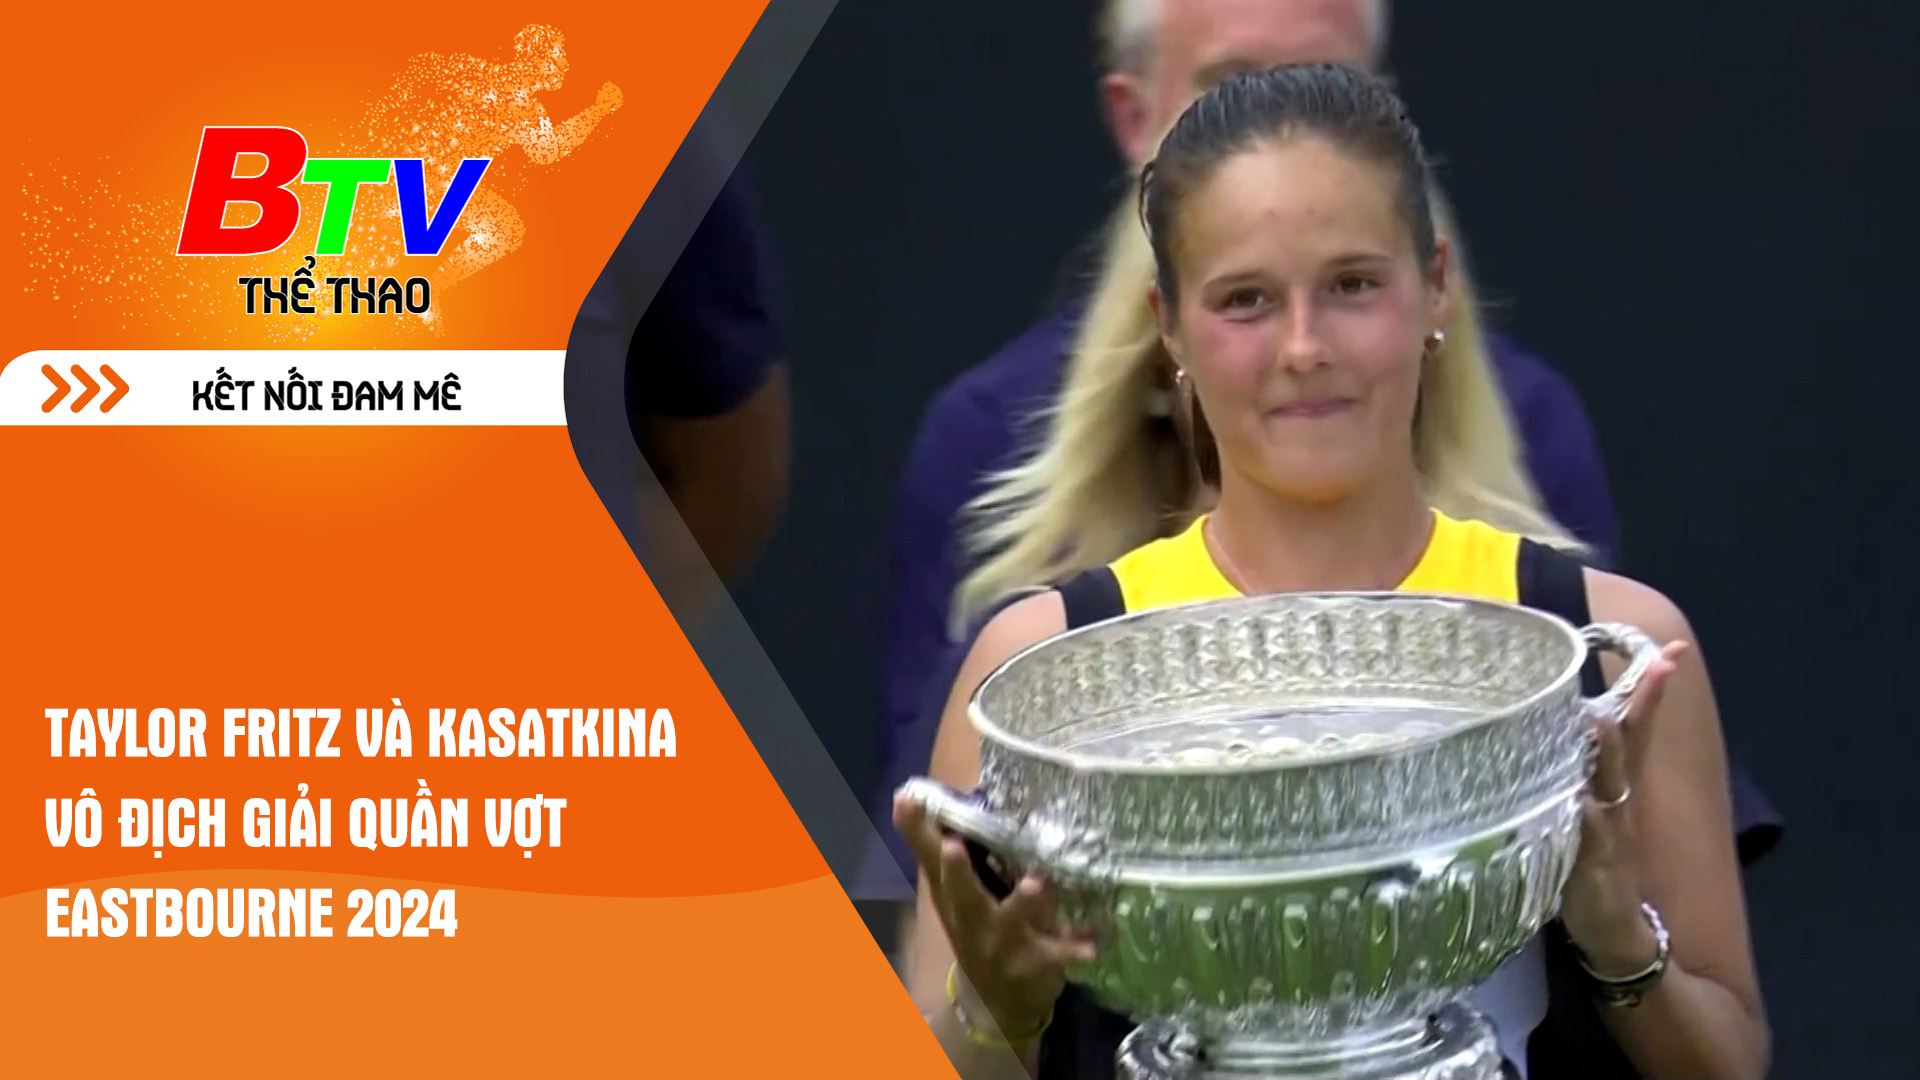 Taylor Fritz và Kasatkina vô địch Giải quần vợt Eastbourne 2024 | Tin Thể thao 24h